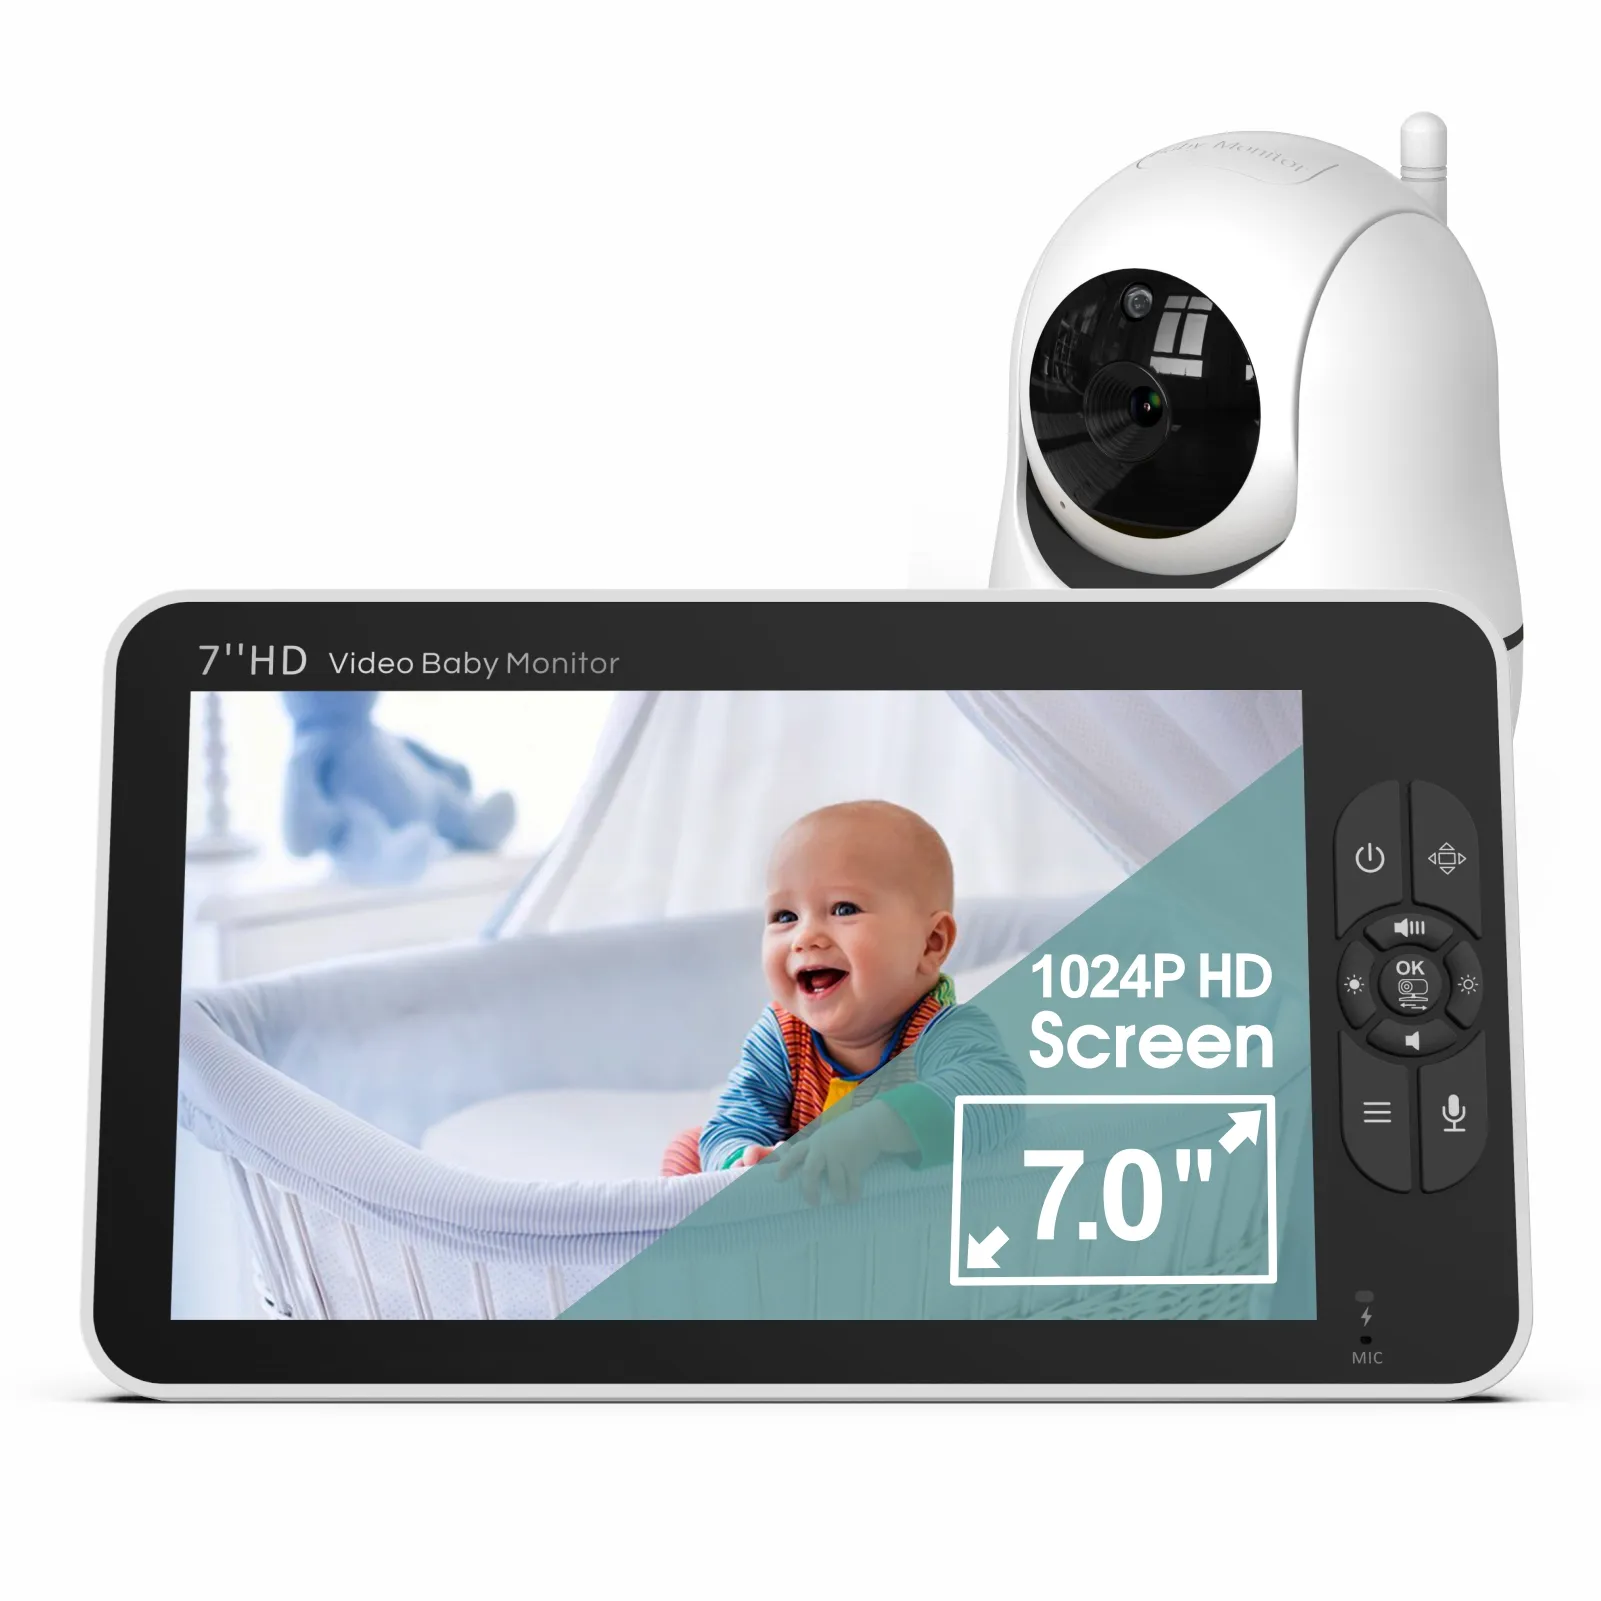 จอภาพเด็ก 7.0 นิ้วใหม่คุณภาพดี Pan-Tilt-Zoom สองทางพูดคุย CE FCC ผู้ผลิตจอภาพเด็กกล้องจอภาพเด็ก